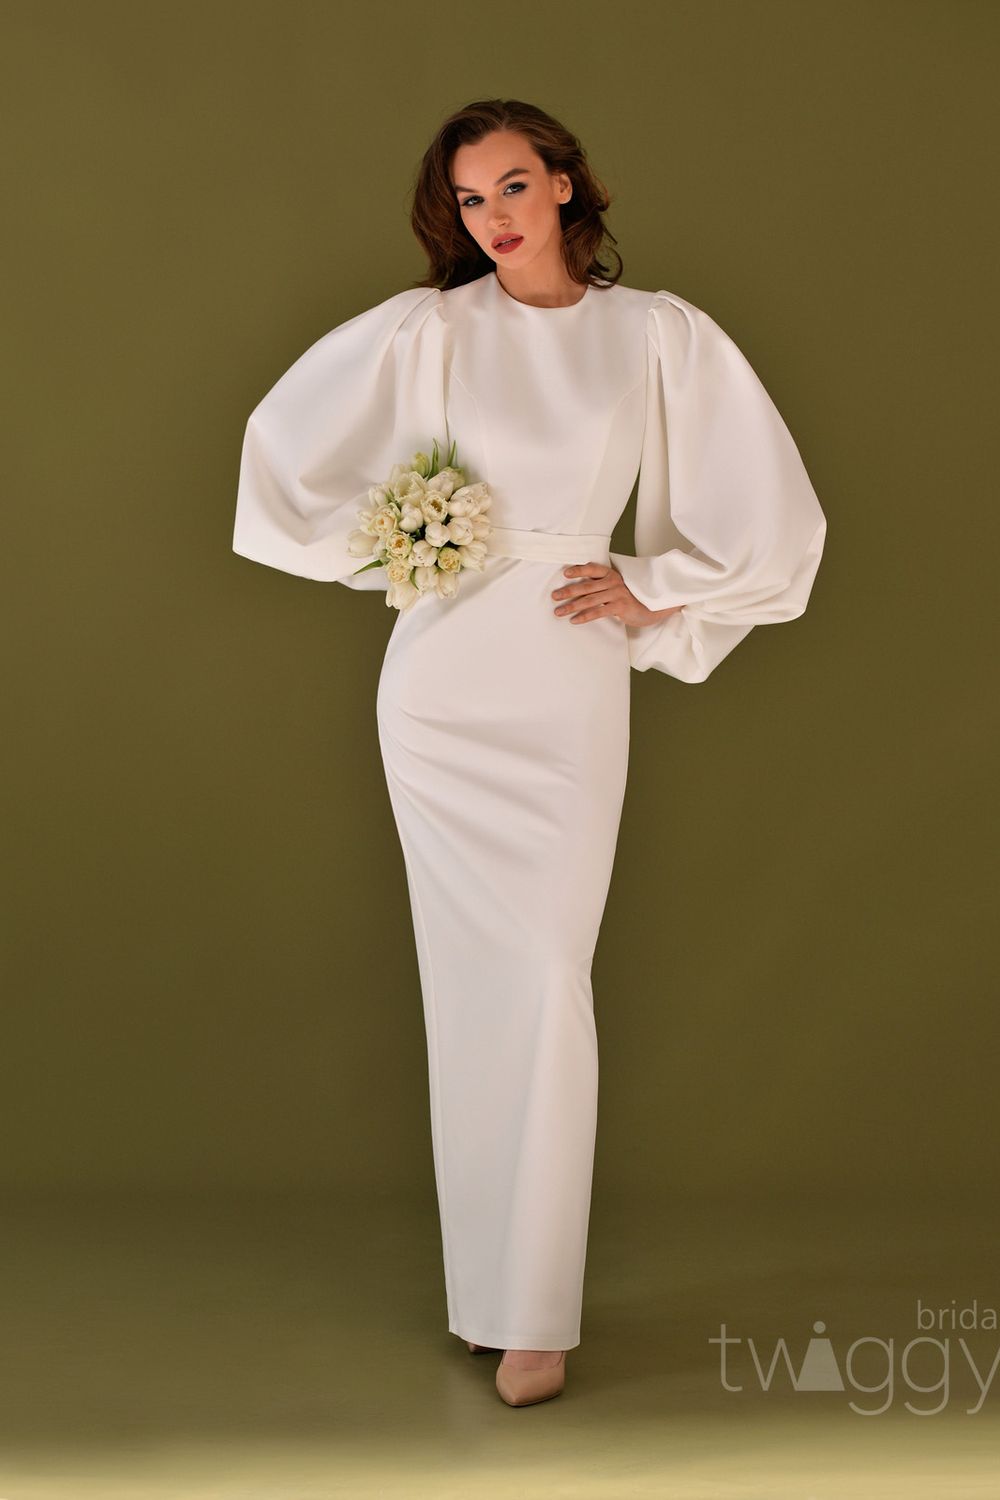 Свадебное платье от бренда Twiggy Bridal 'Марлен' с закрытым верхом